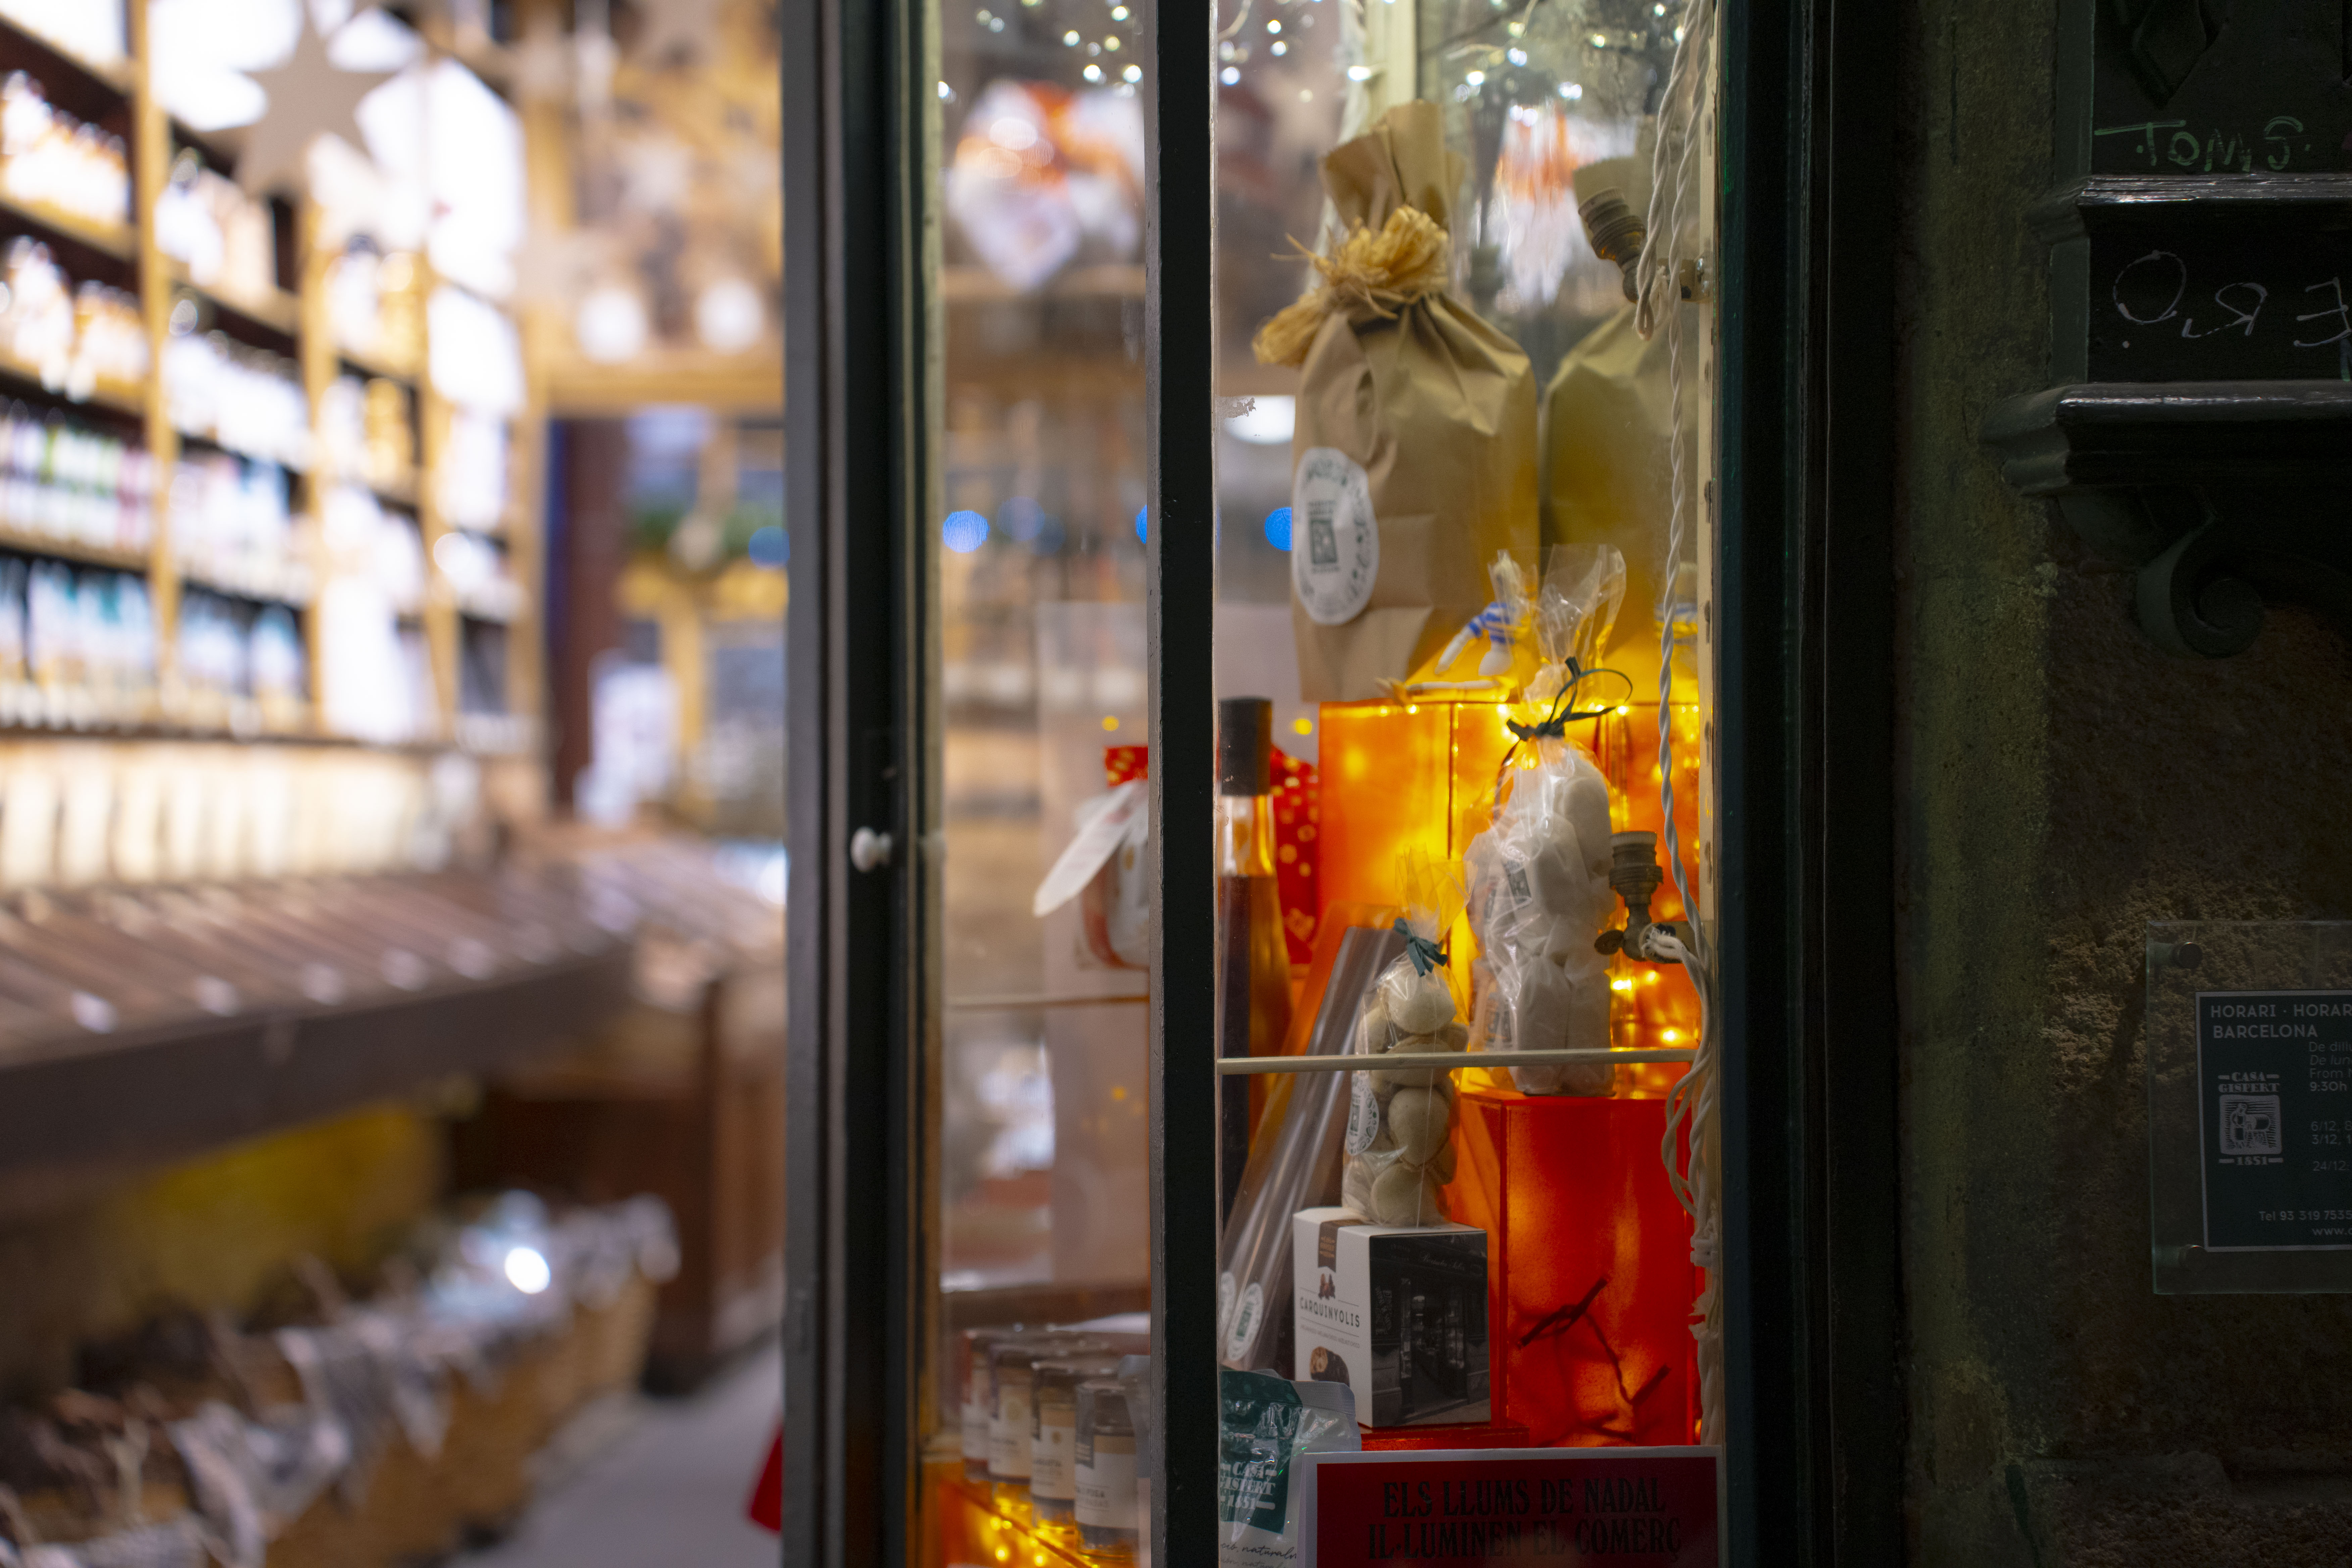 “Las luces de Navidad iluminan el comercio” vuelven a llenar de luz los escaparates de Barcelona